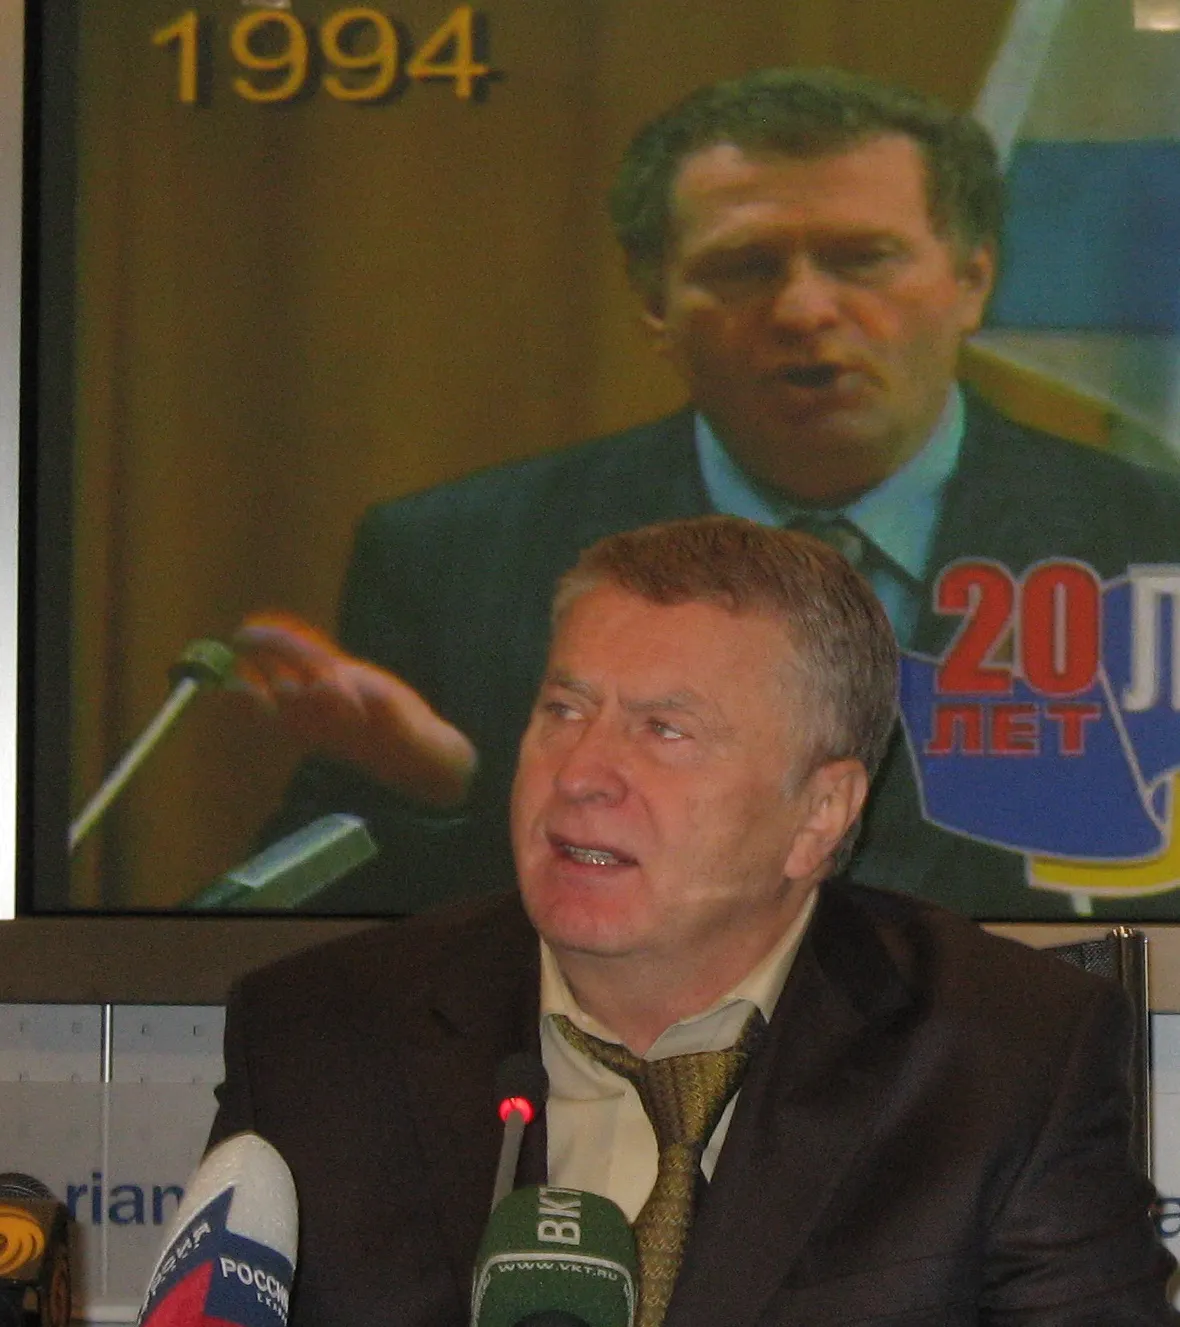 Владимир Жириновский, лидер ЛДПР